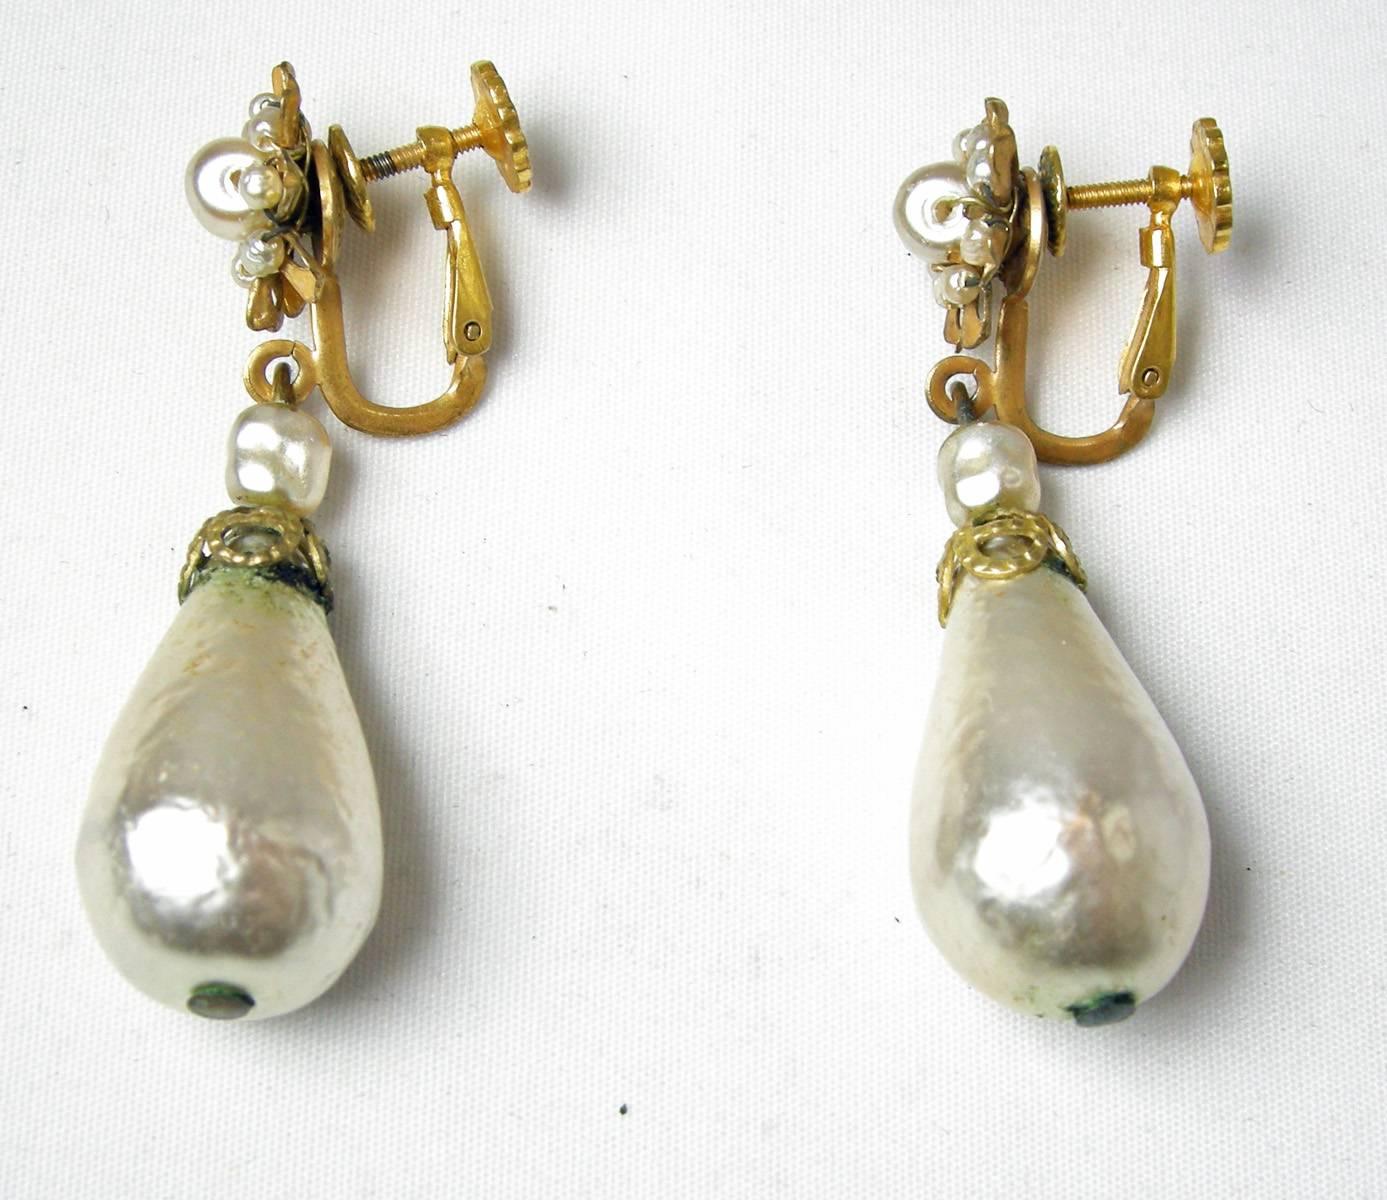 baroque style earrings